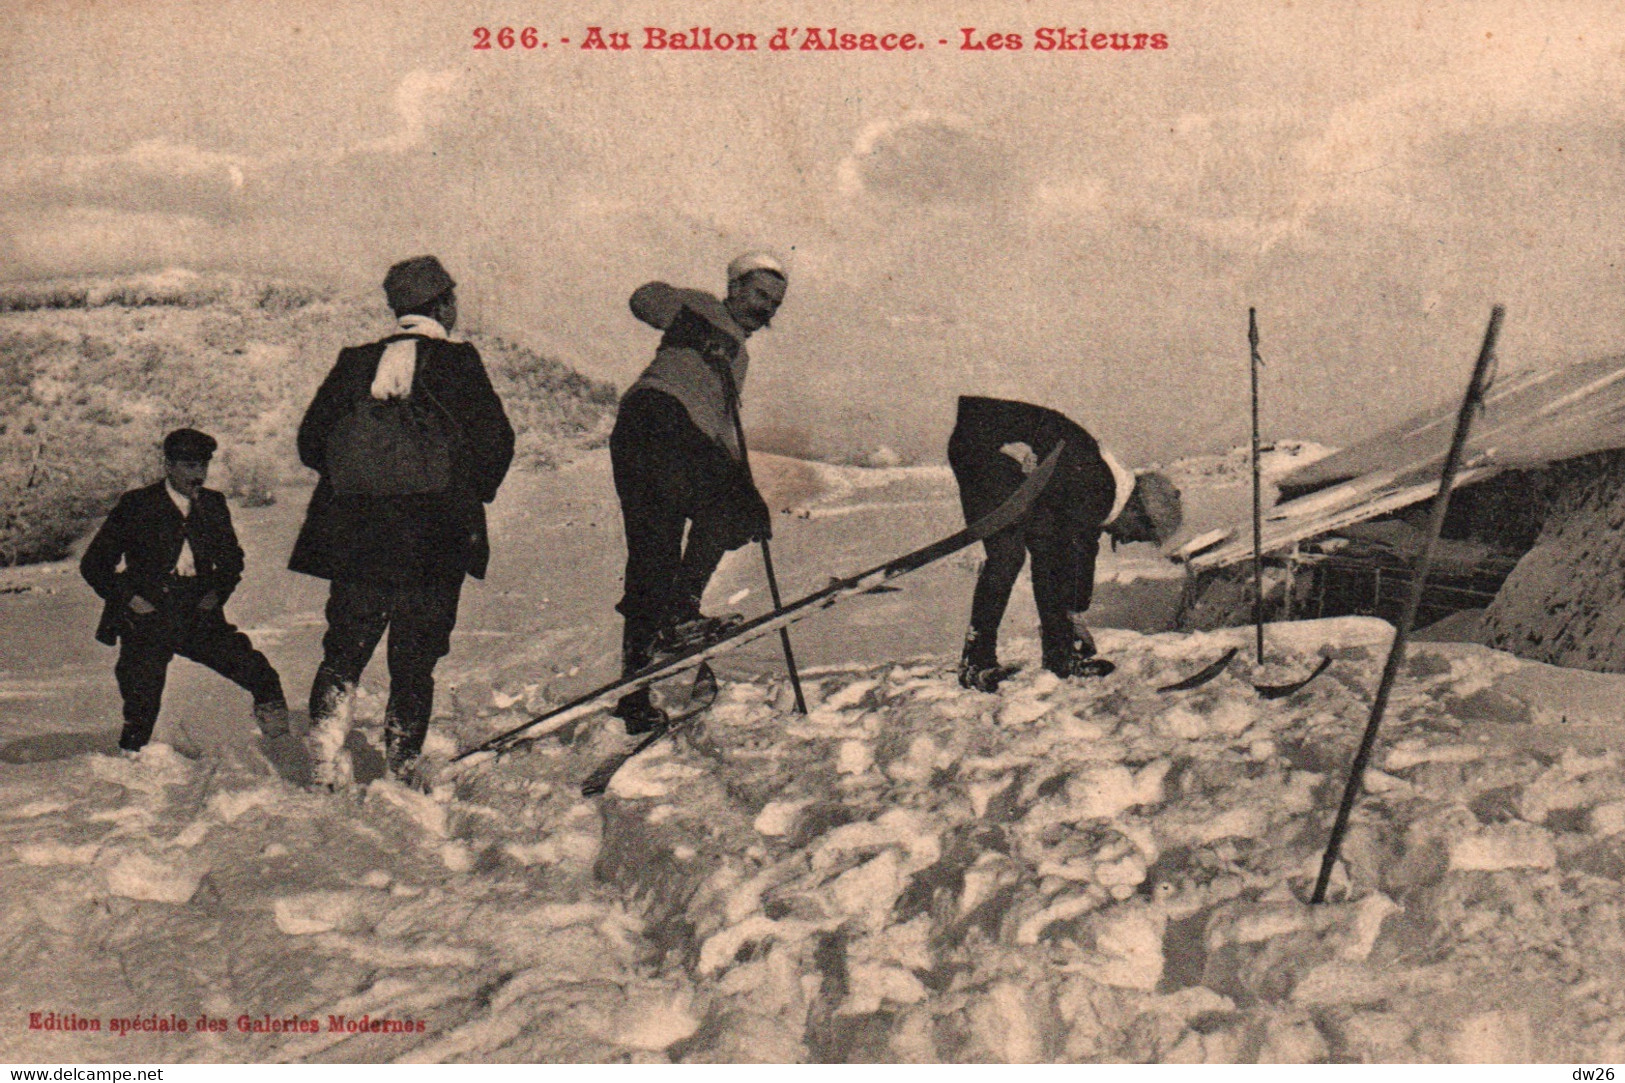 Sports D'hiver Dans Les Vosges - Ski: Les Skieurs Au Ballon D'Alsace - Edition Galeries Modernes - Carte N° 266 - Sports D'hiver